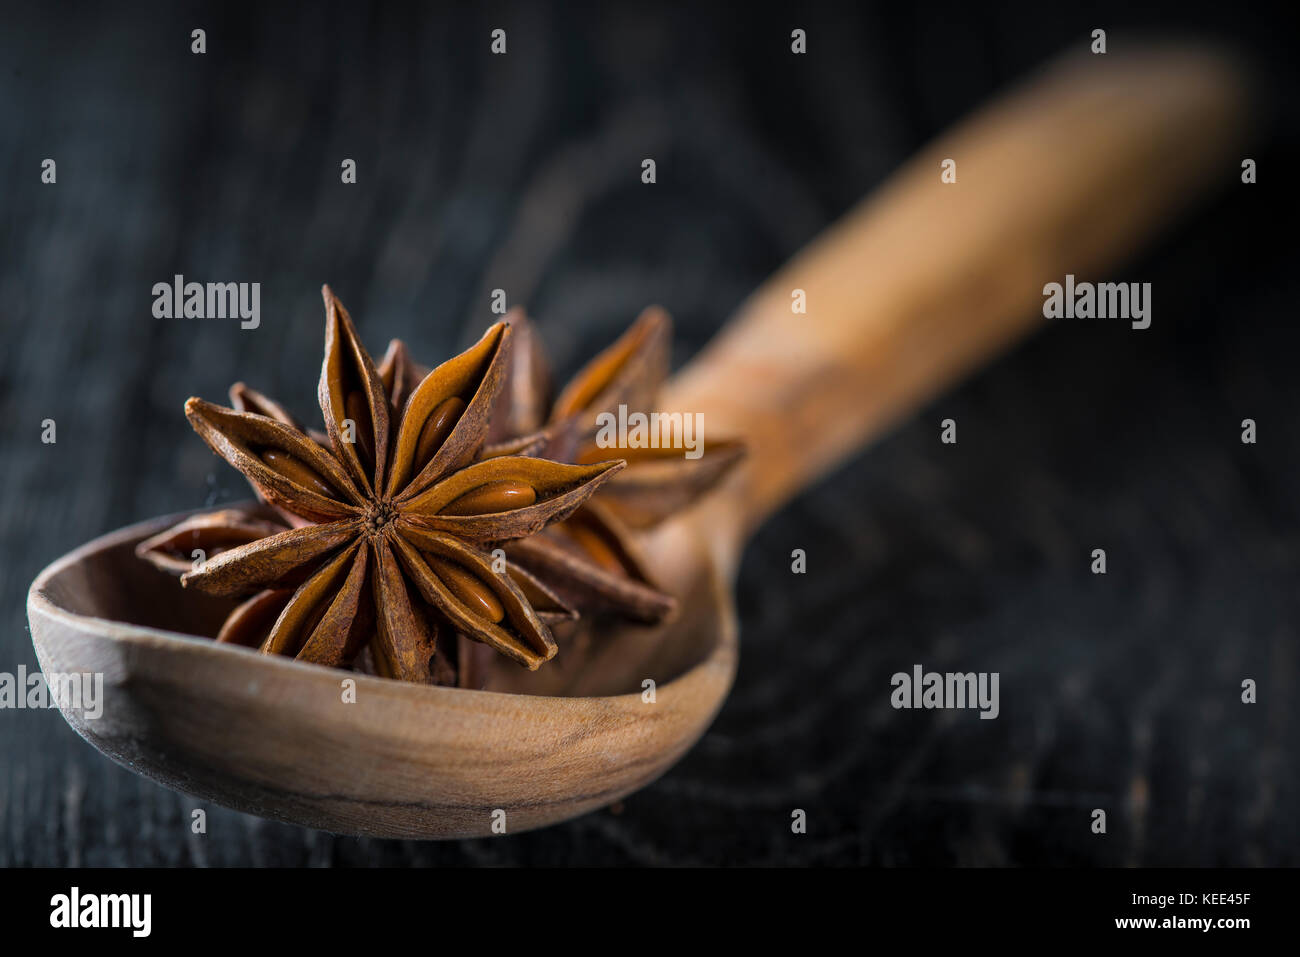 La badiane graines dans une cuillère en bois sur un backgrond noir Banque D'Images